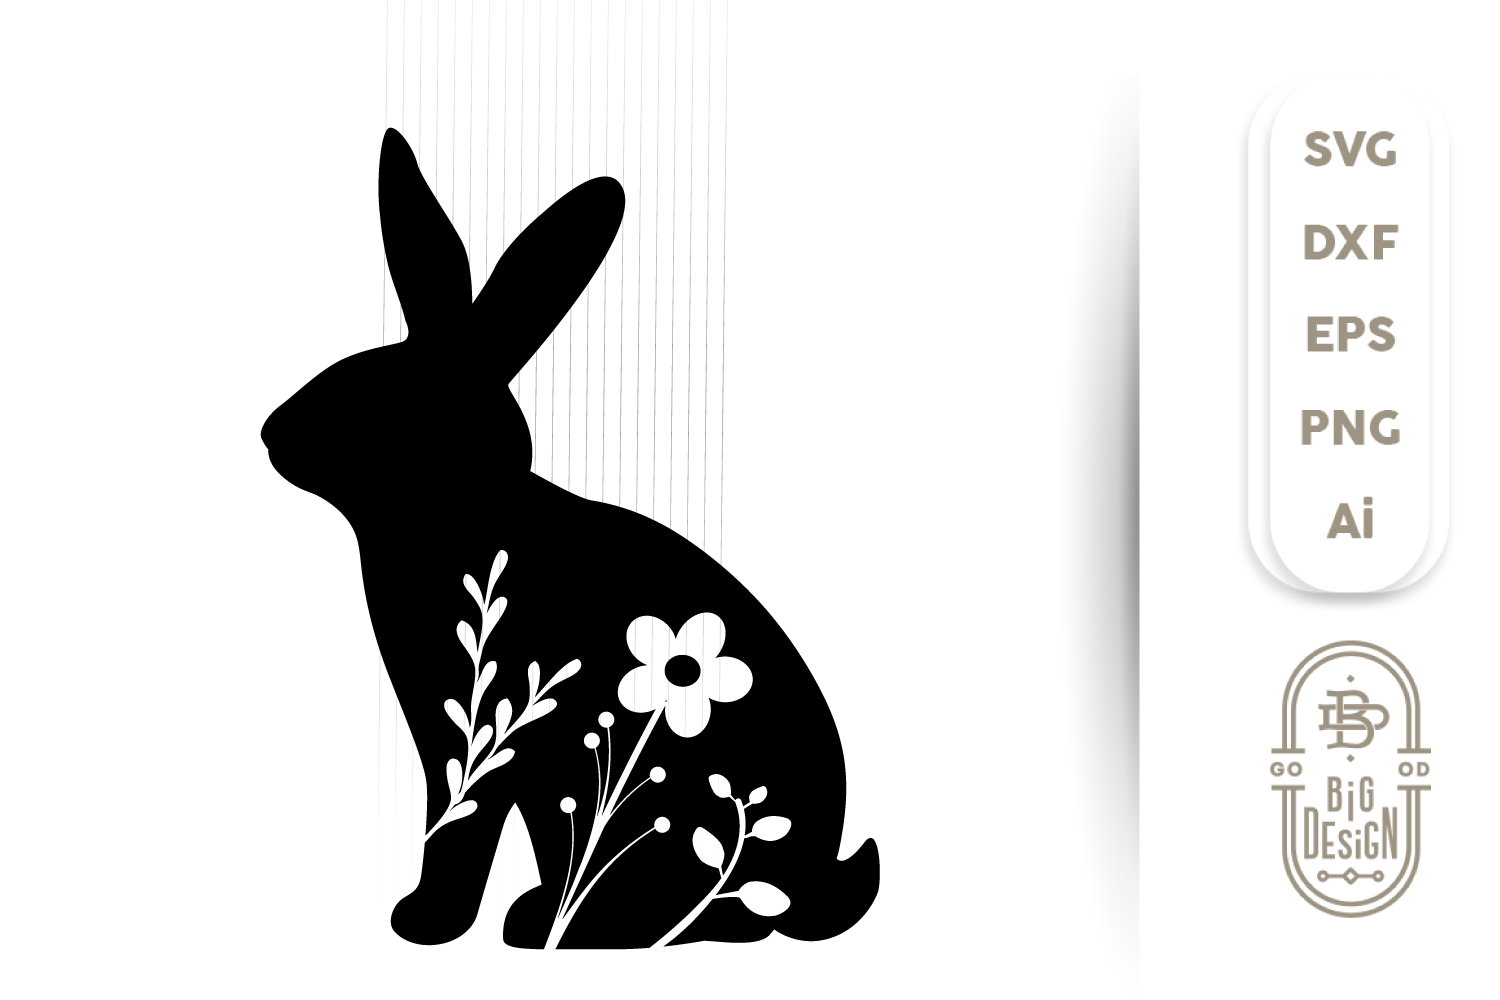 Download Free 18395+ SVG Easter Bunny Svg Free Download SVG PNG EPS DXF